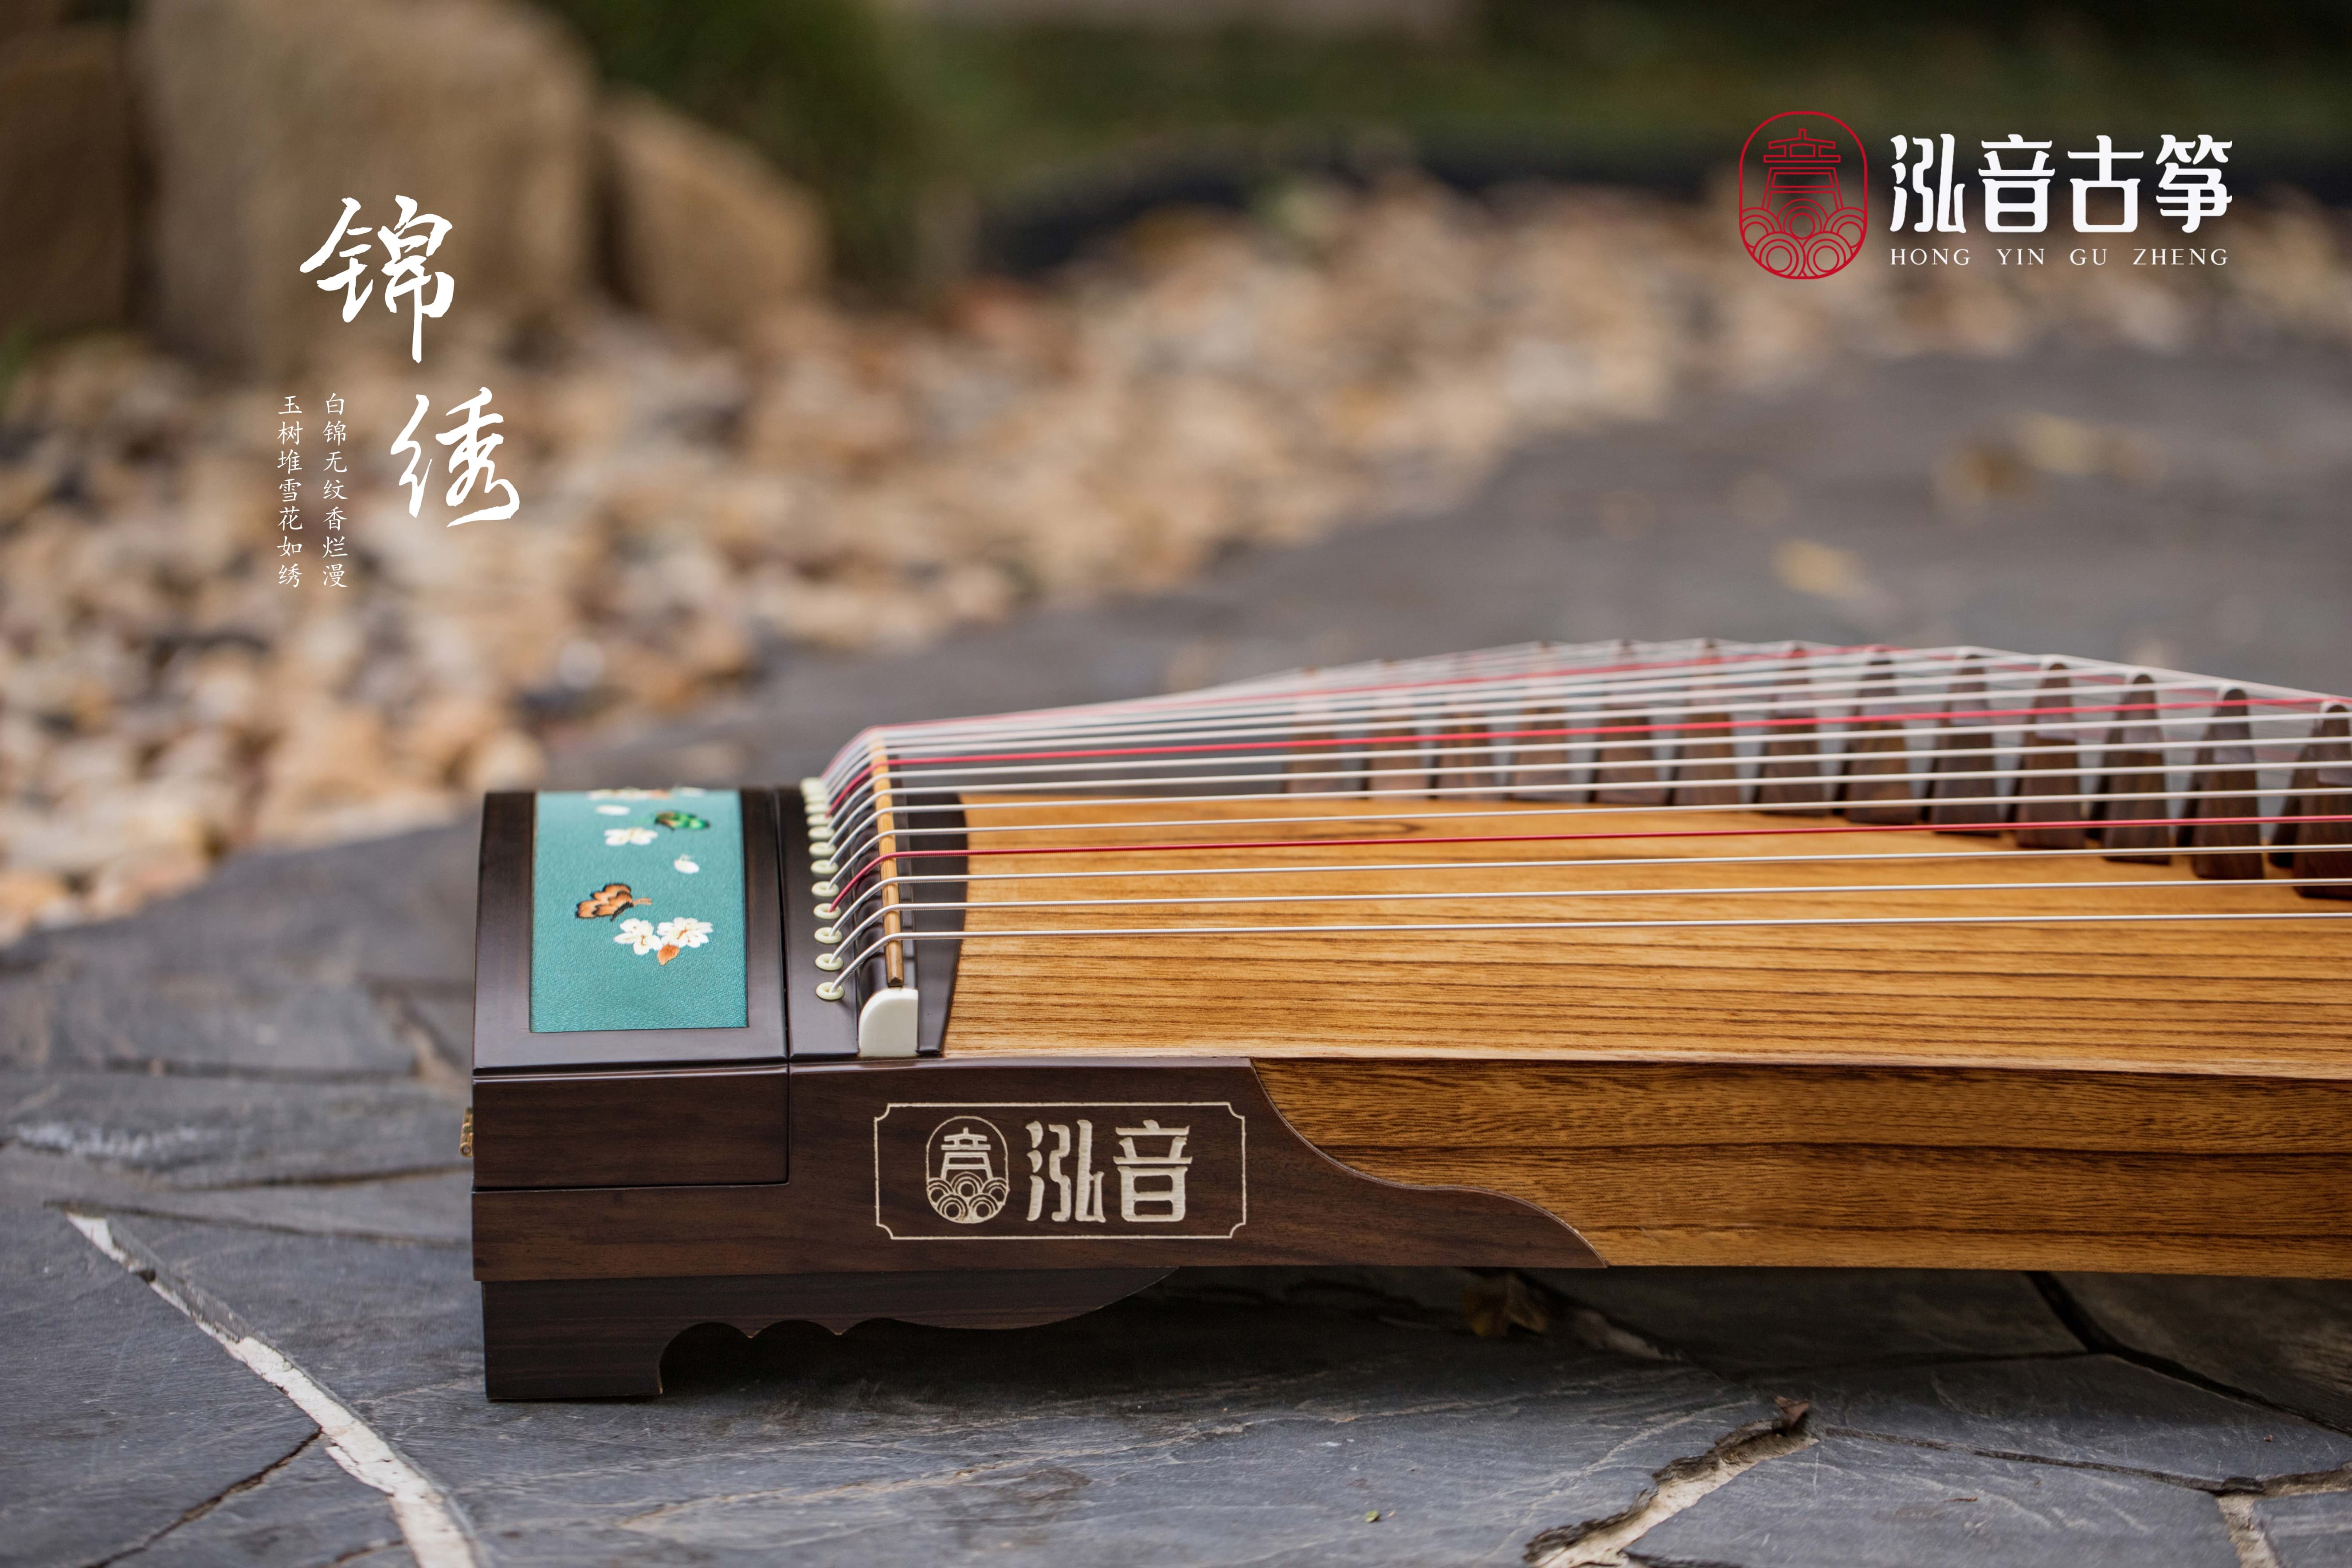 Hongyin 51in Black Walnut Guzheng “Jin Xiu” at Guzheng World 古筝 